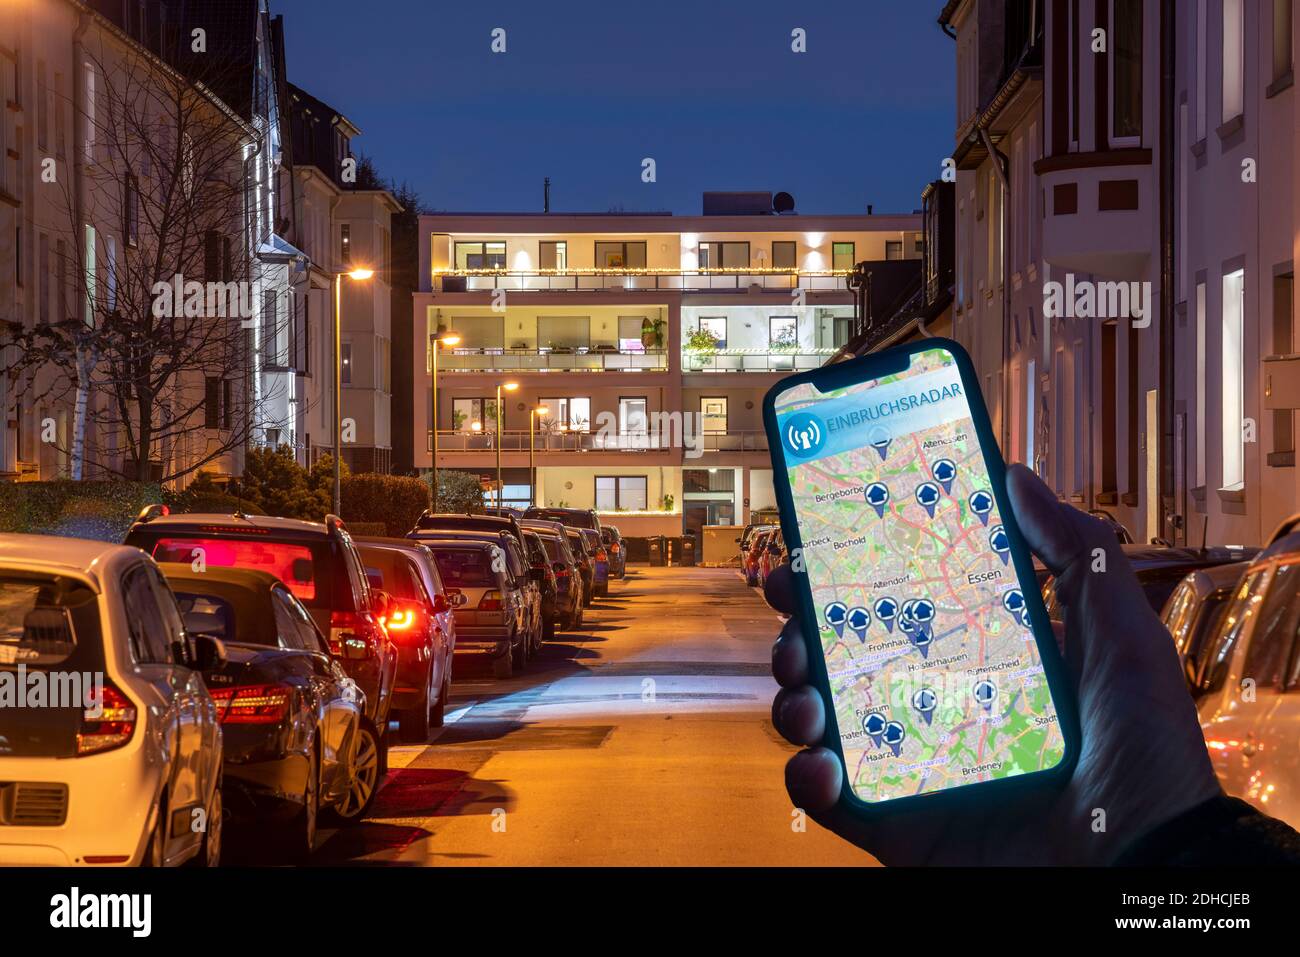 Immagine simbolica di burglary residenziale, app radar burglar, mostra burglaries in città, gli ultimi giorni, strada residenziale, molti edifici di appartamenti Foto Stock